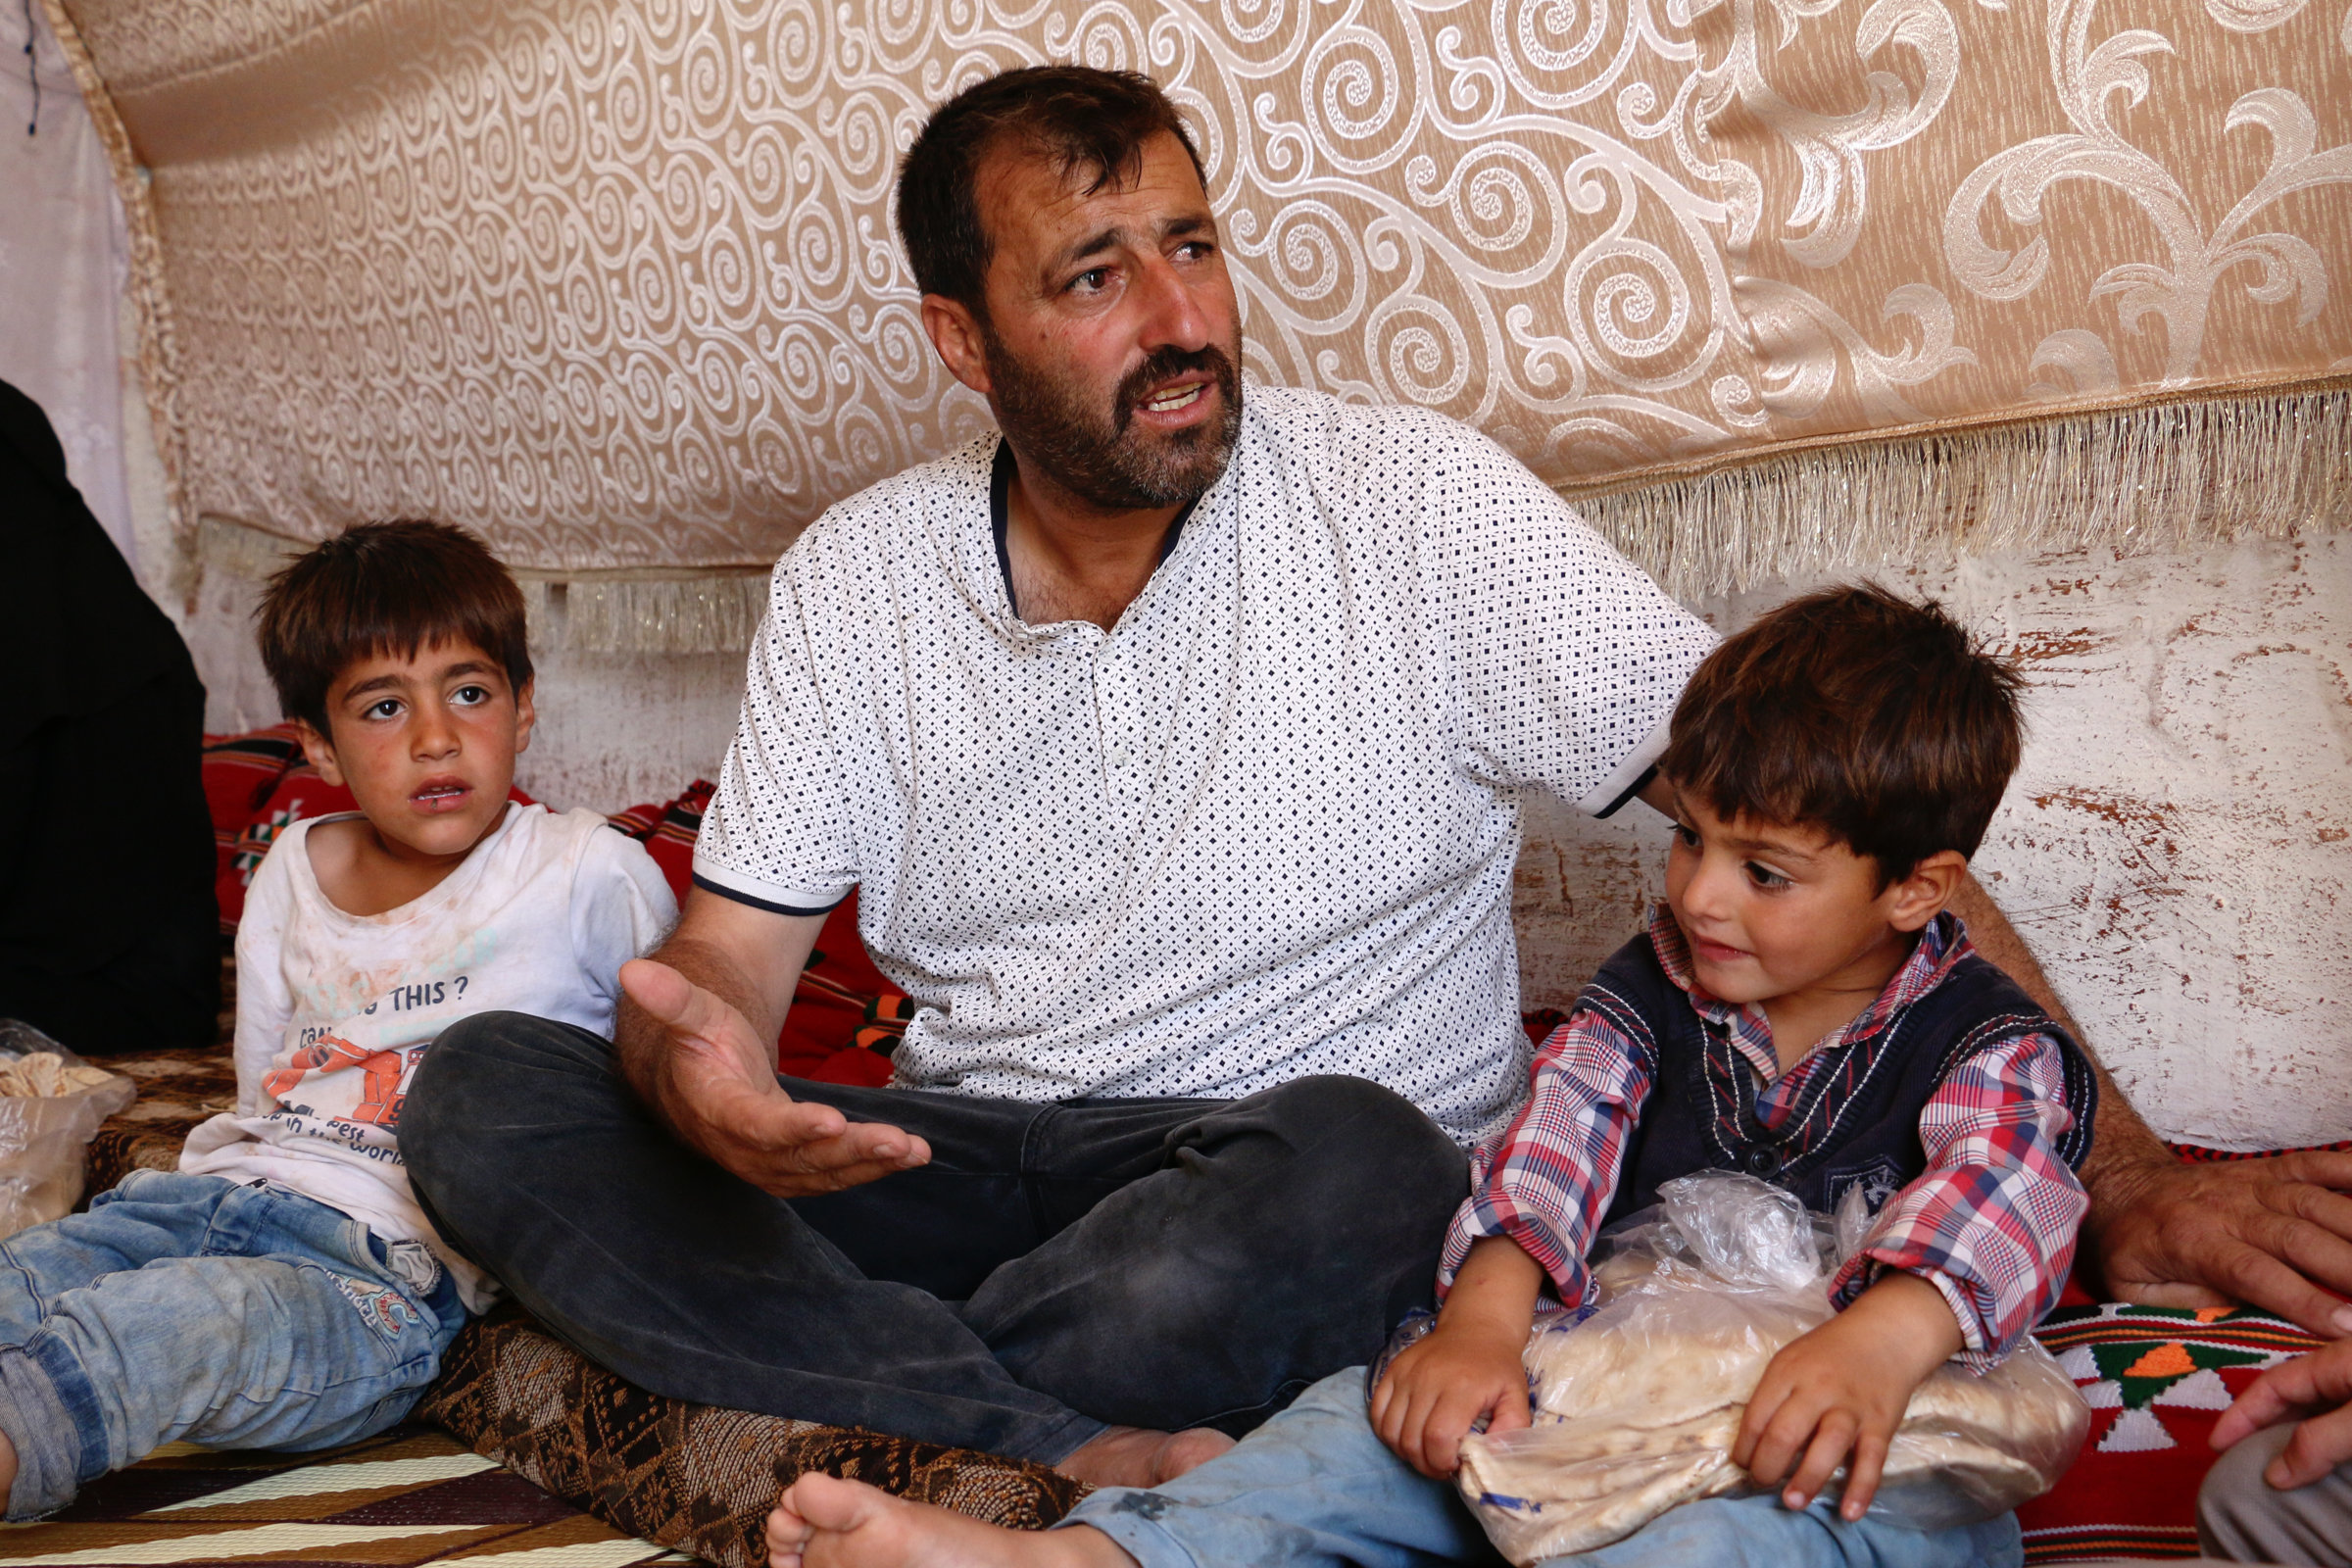 Das Bild zeigt Ahmed Hassan mit zwei seiner Söhne. Die Kinder sind ungefähr 4 und 7 Jahre alt. Das jüngere hält eine Tüte mit Brot in den Händen.